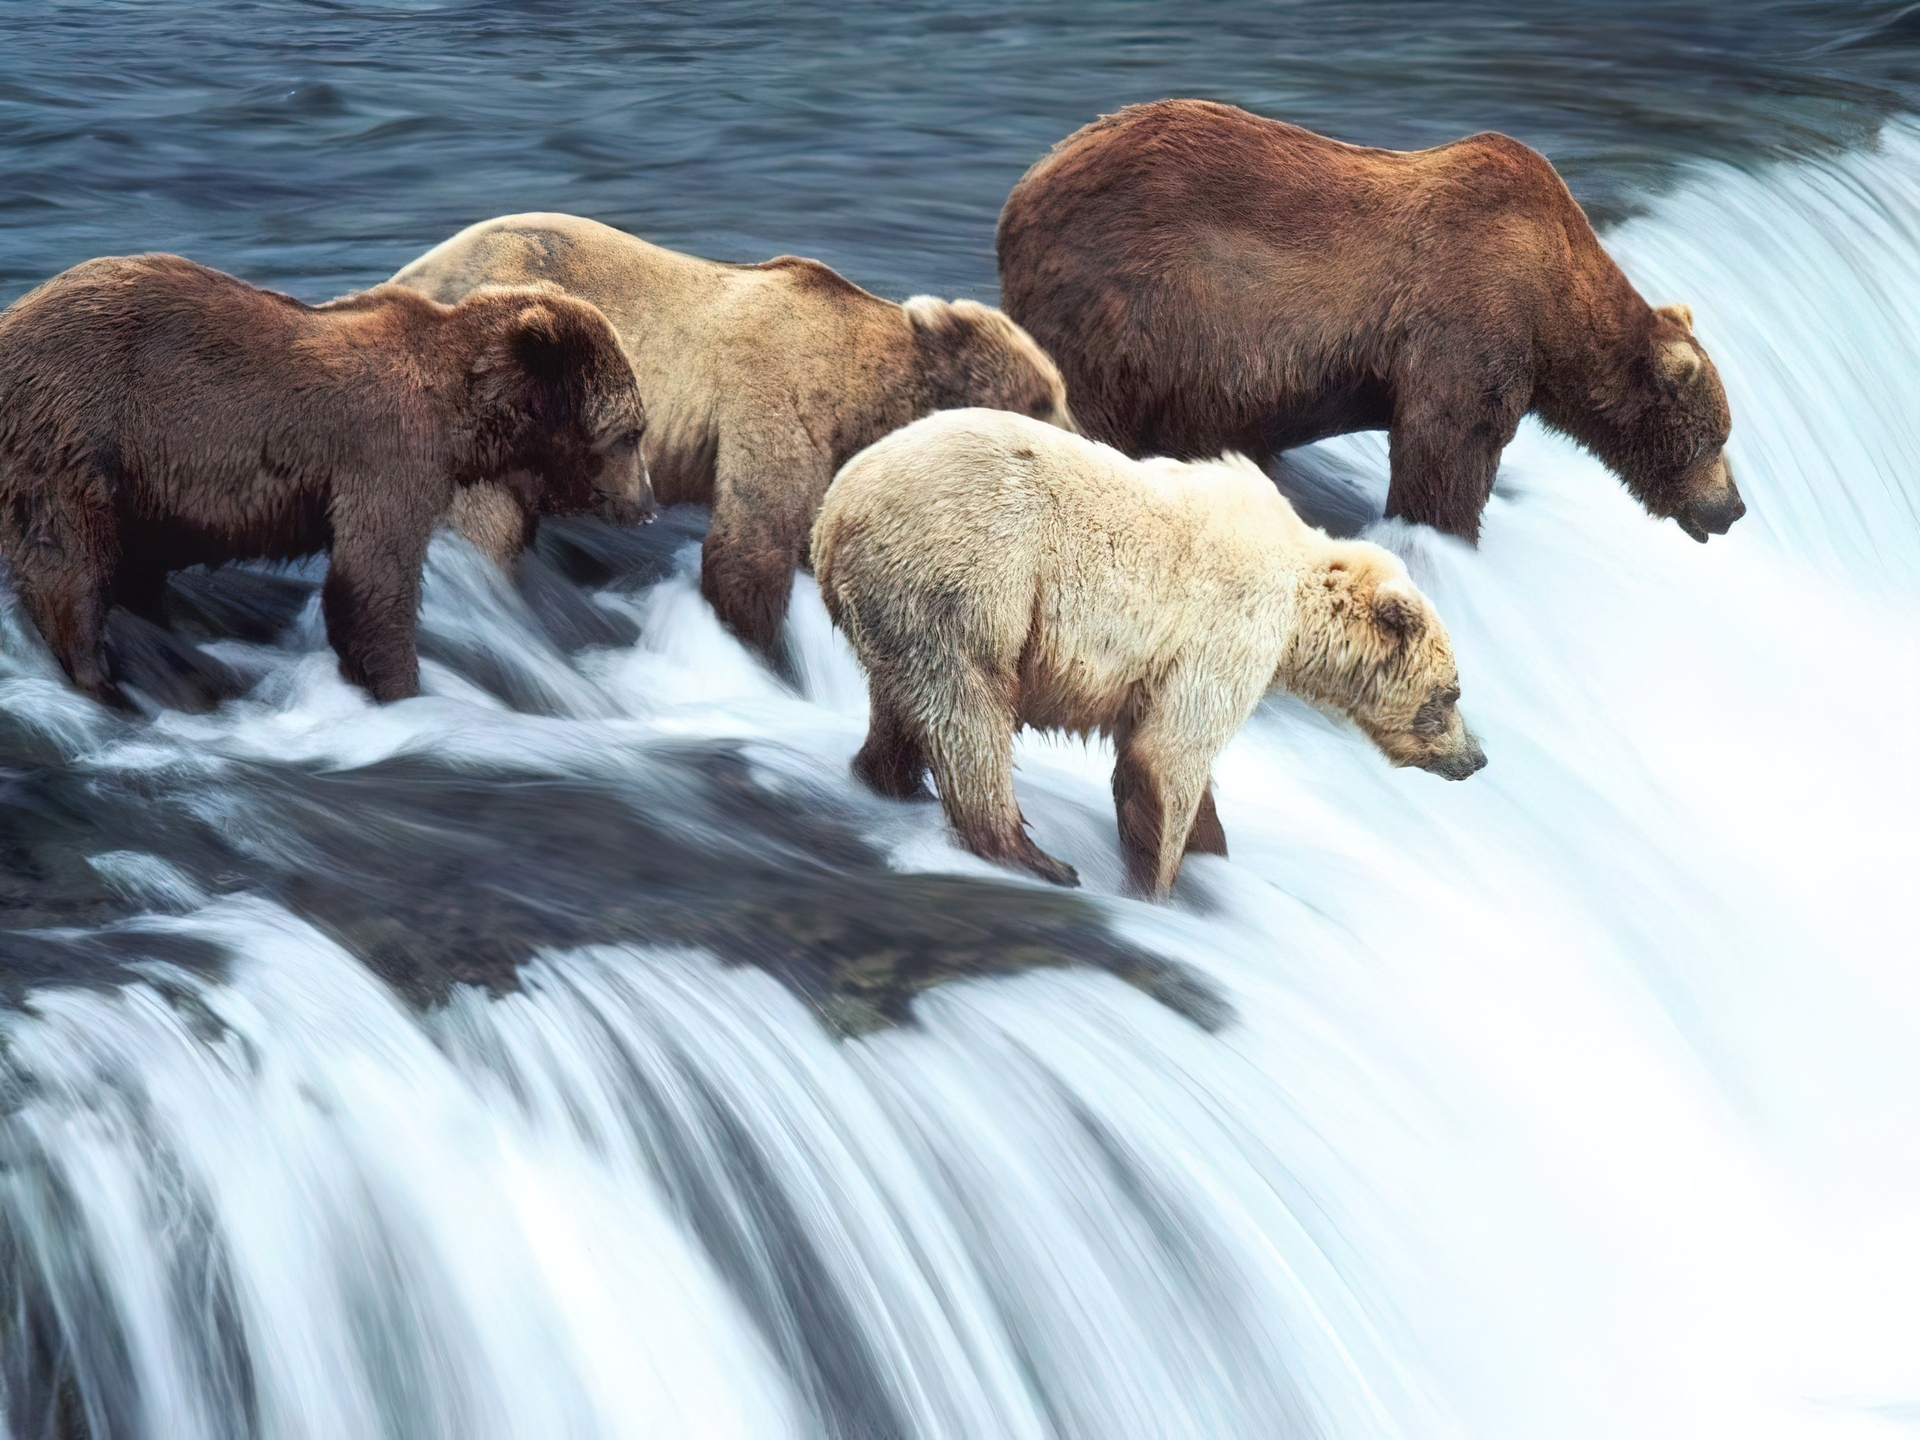 Обитатели аляски. Национальный парк Катмай. Национальный парк Катмай Аляска. Бурый медведь на Аляске. Медведь Гризли на Аляске.